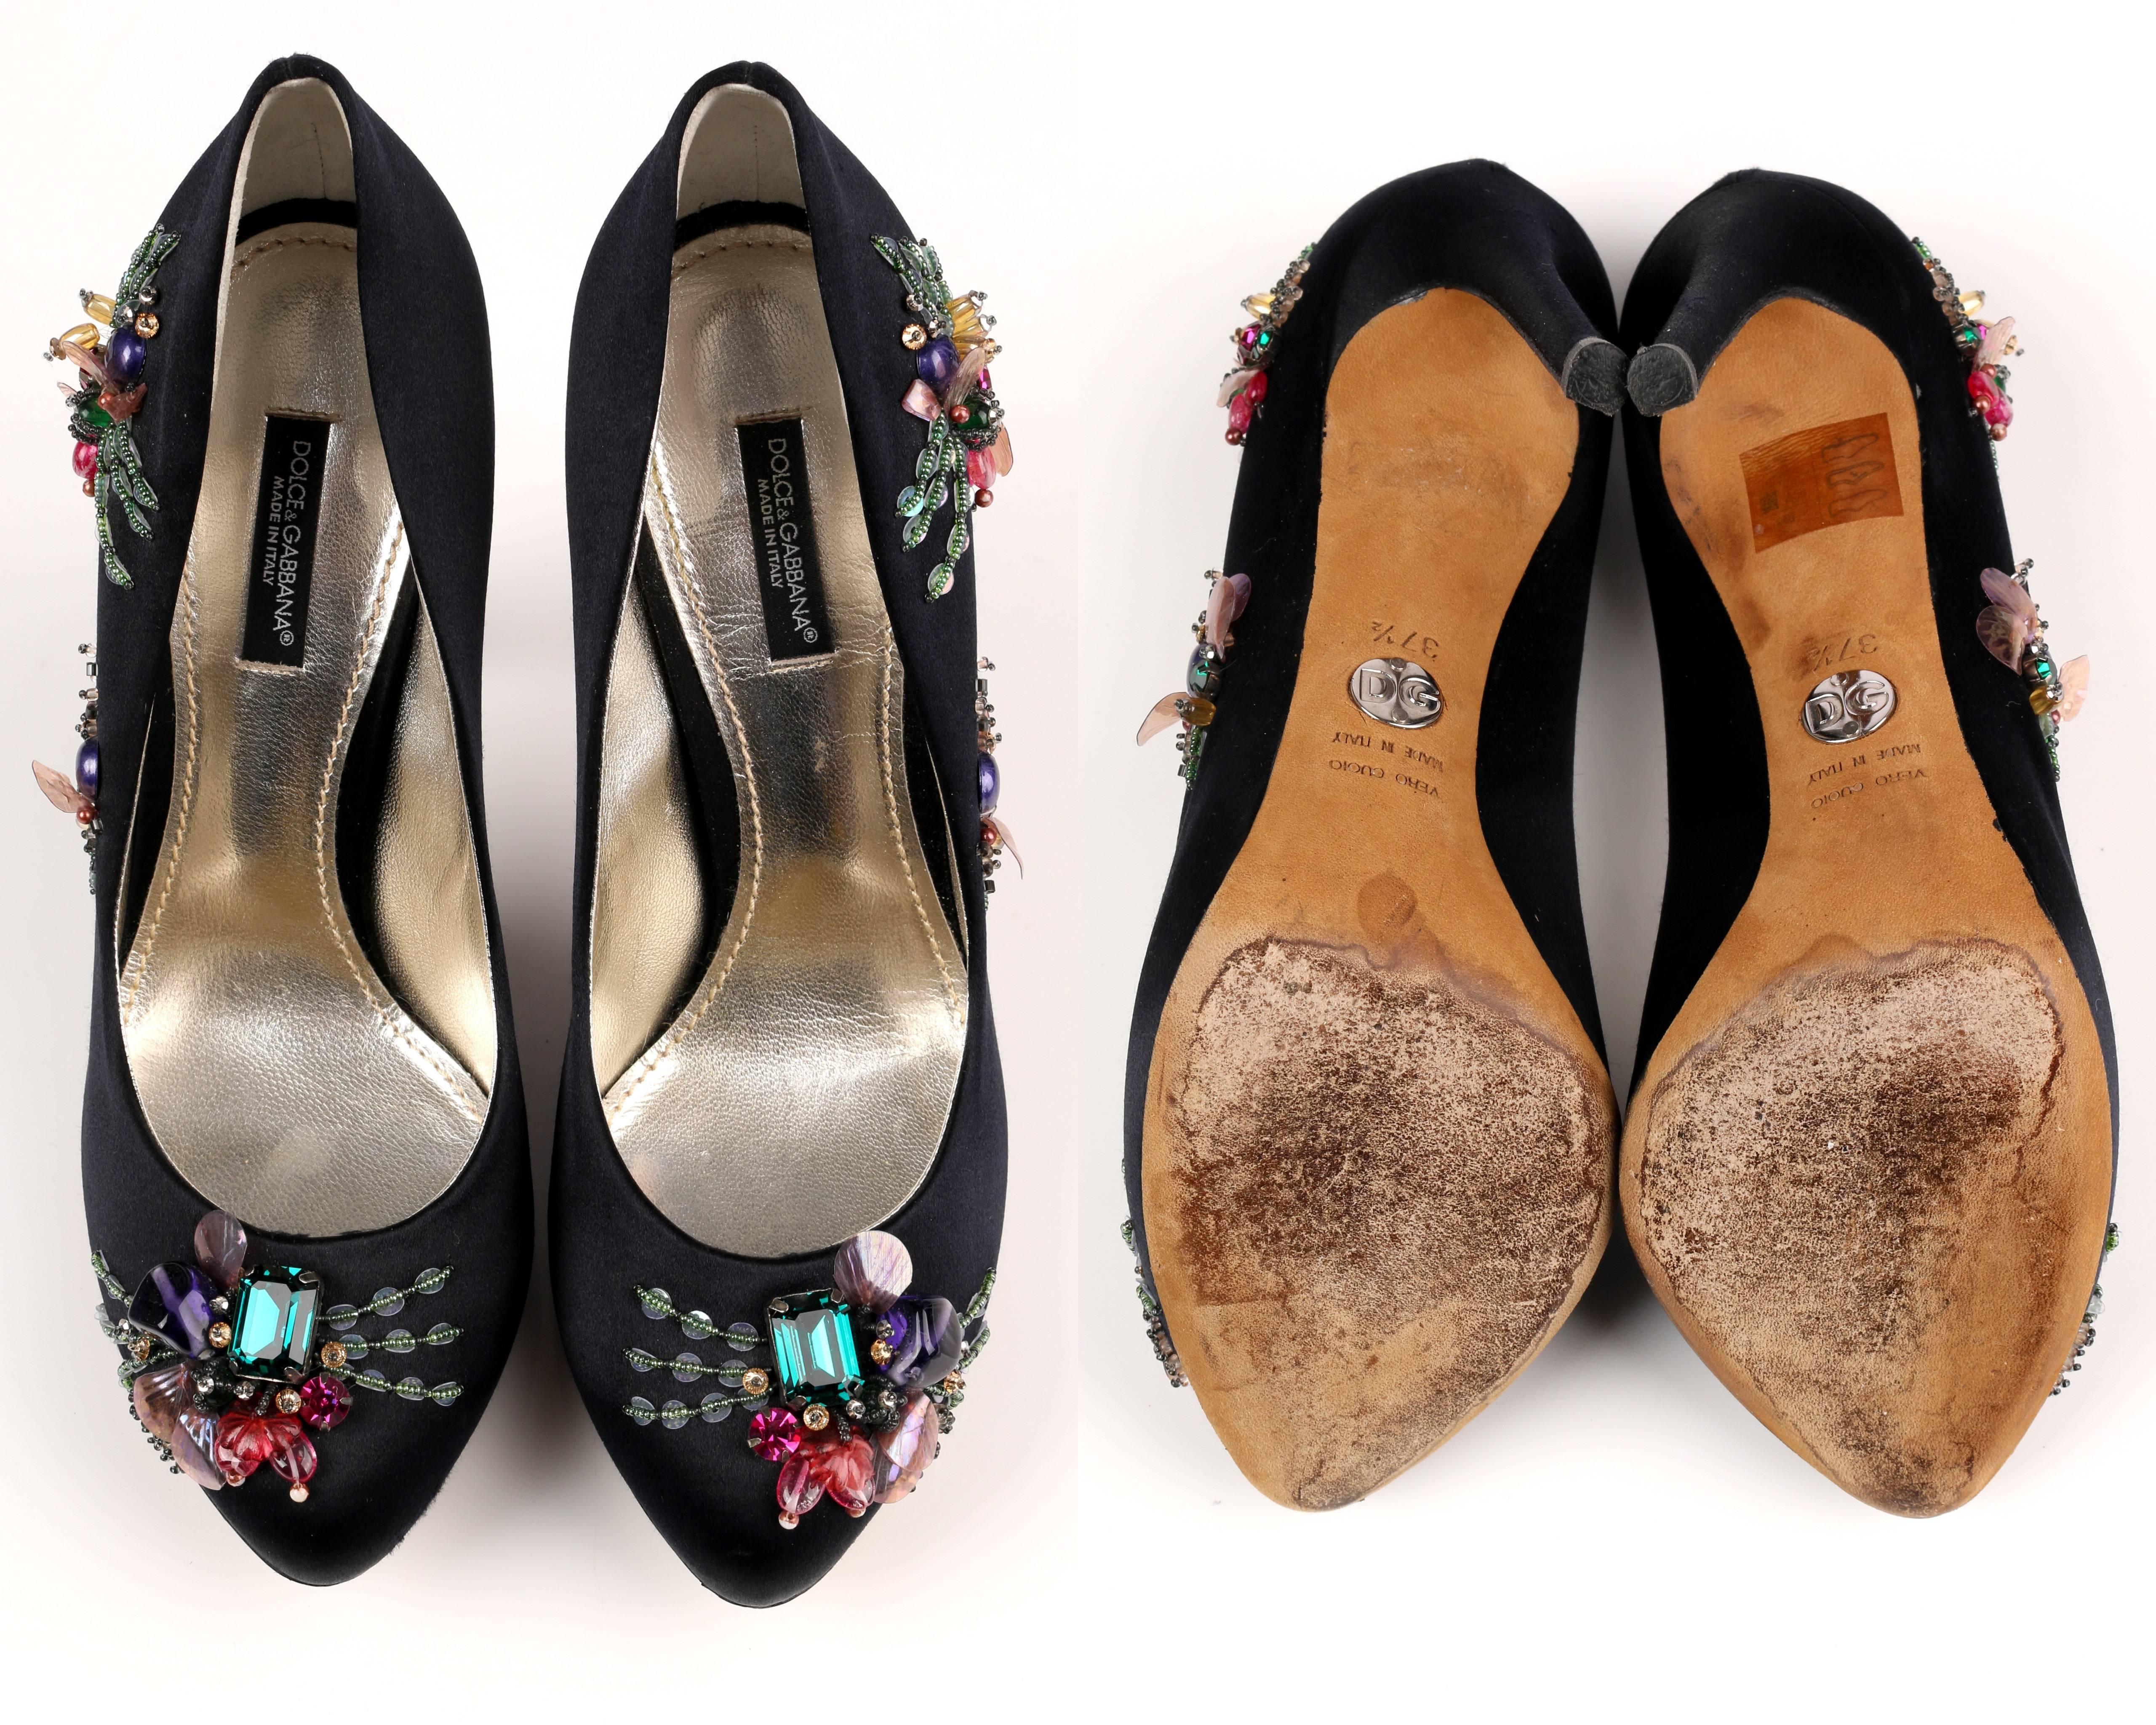 DOLCE & GABBANA Black Satin Beaded Embellished Platform Pumps Heels Shoes 37.5 3